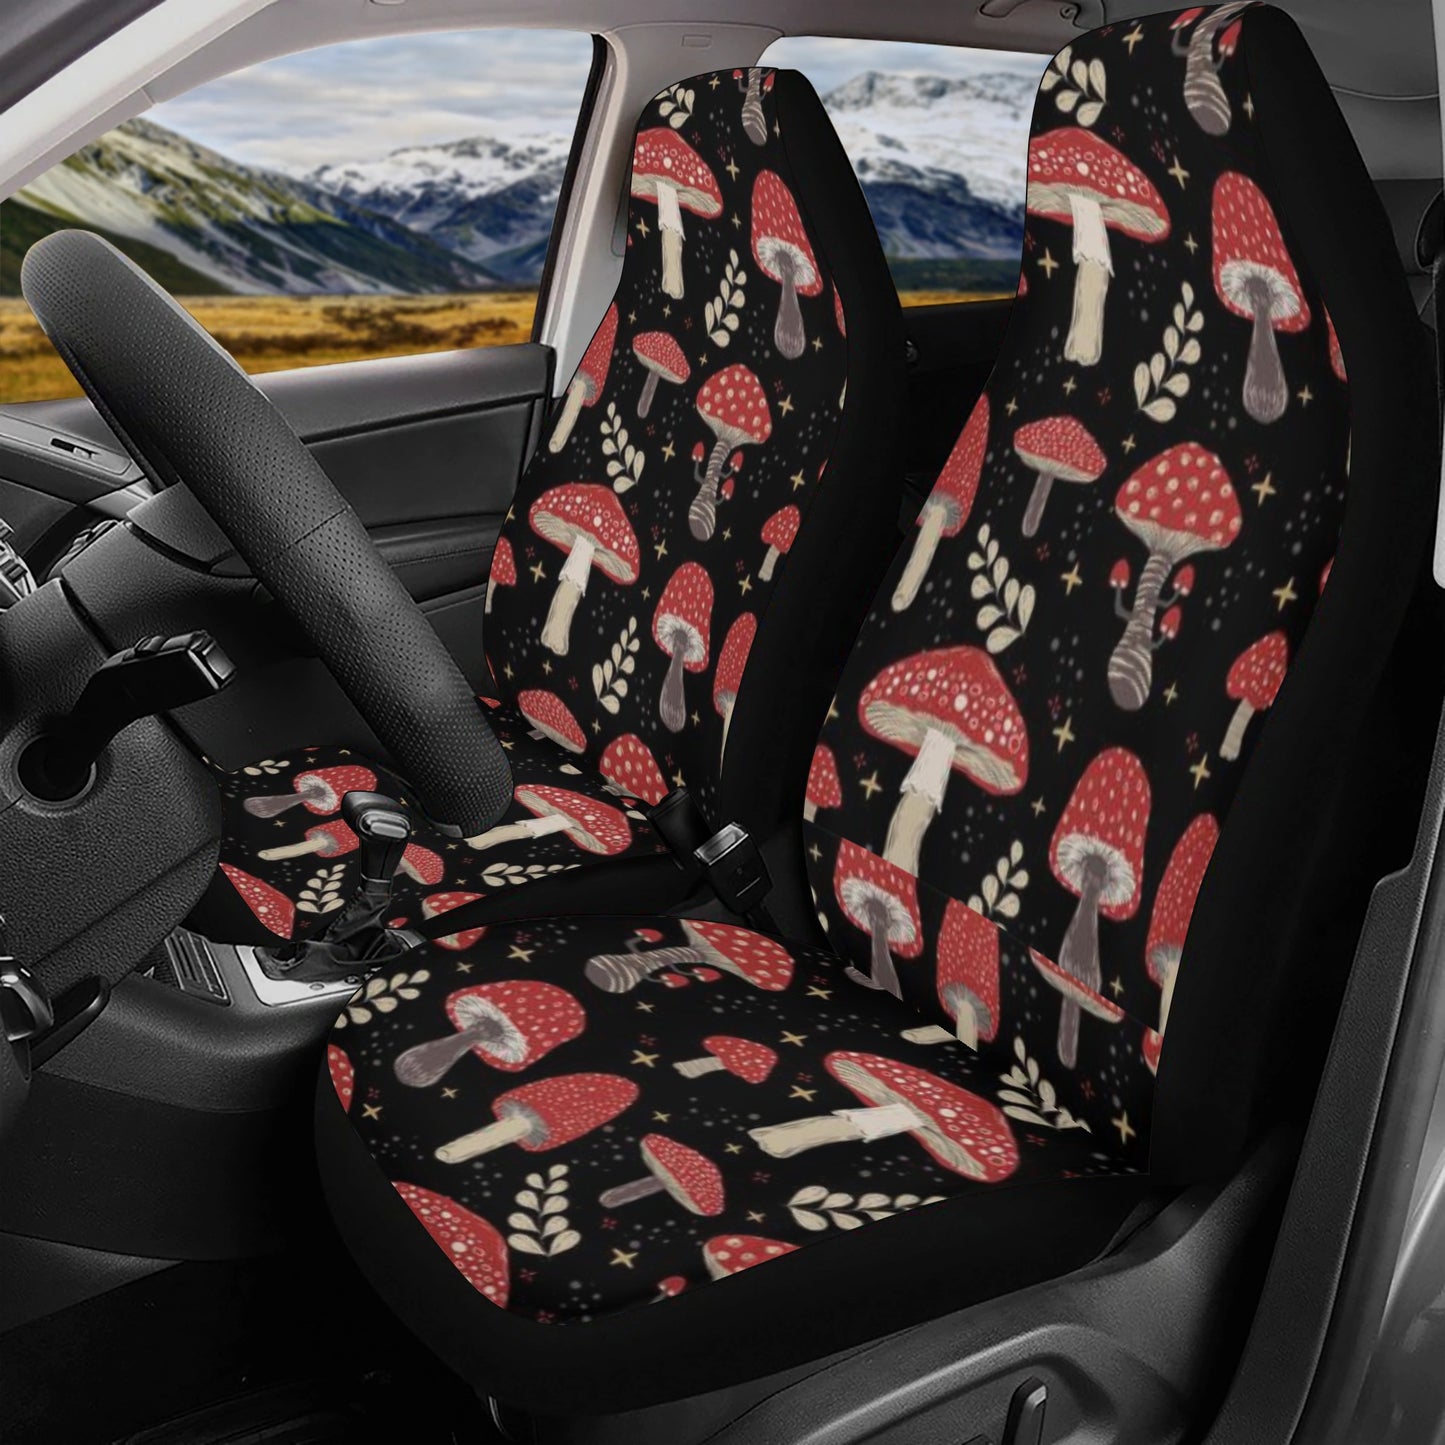 Red Amanita mushroom Car Seat Cover Set